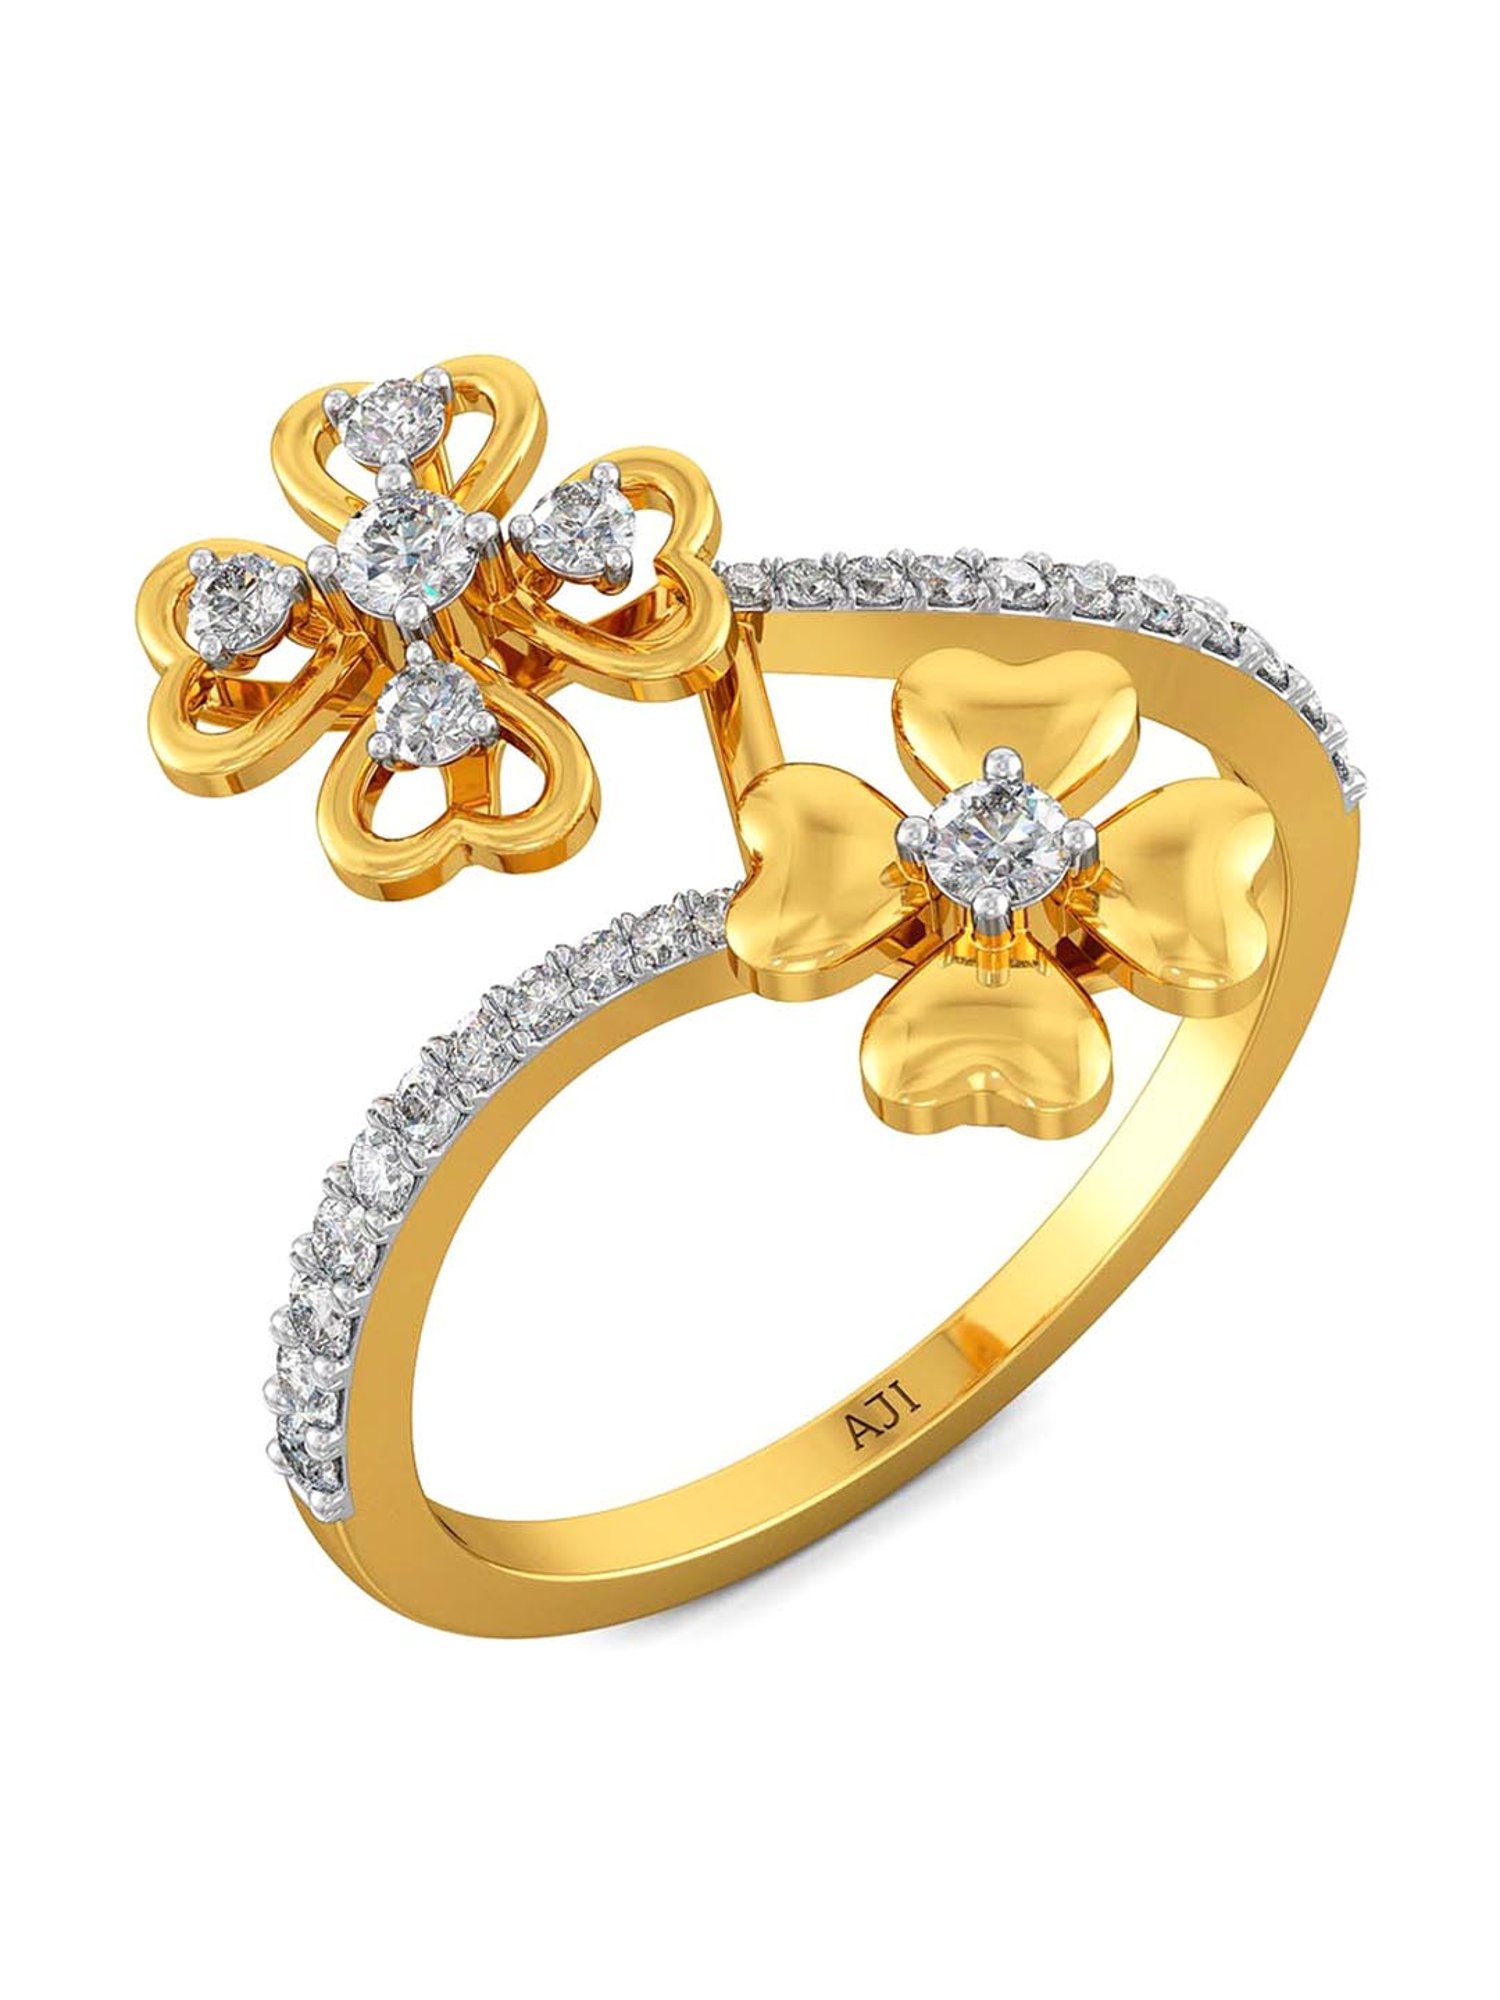 Buy Joyalukkas 18k Gold & Diamond Ring for Women Online At Best ...